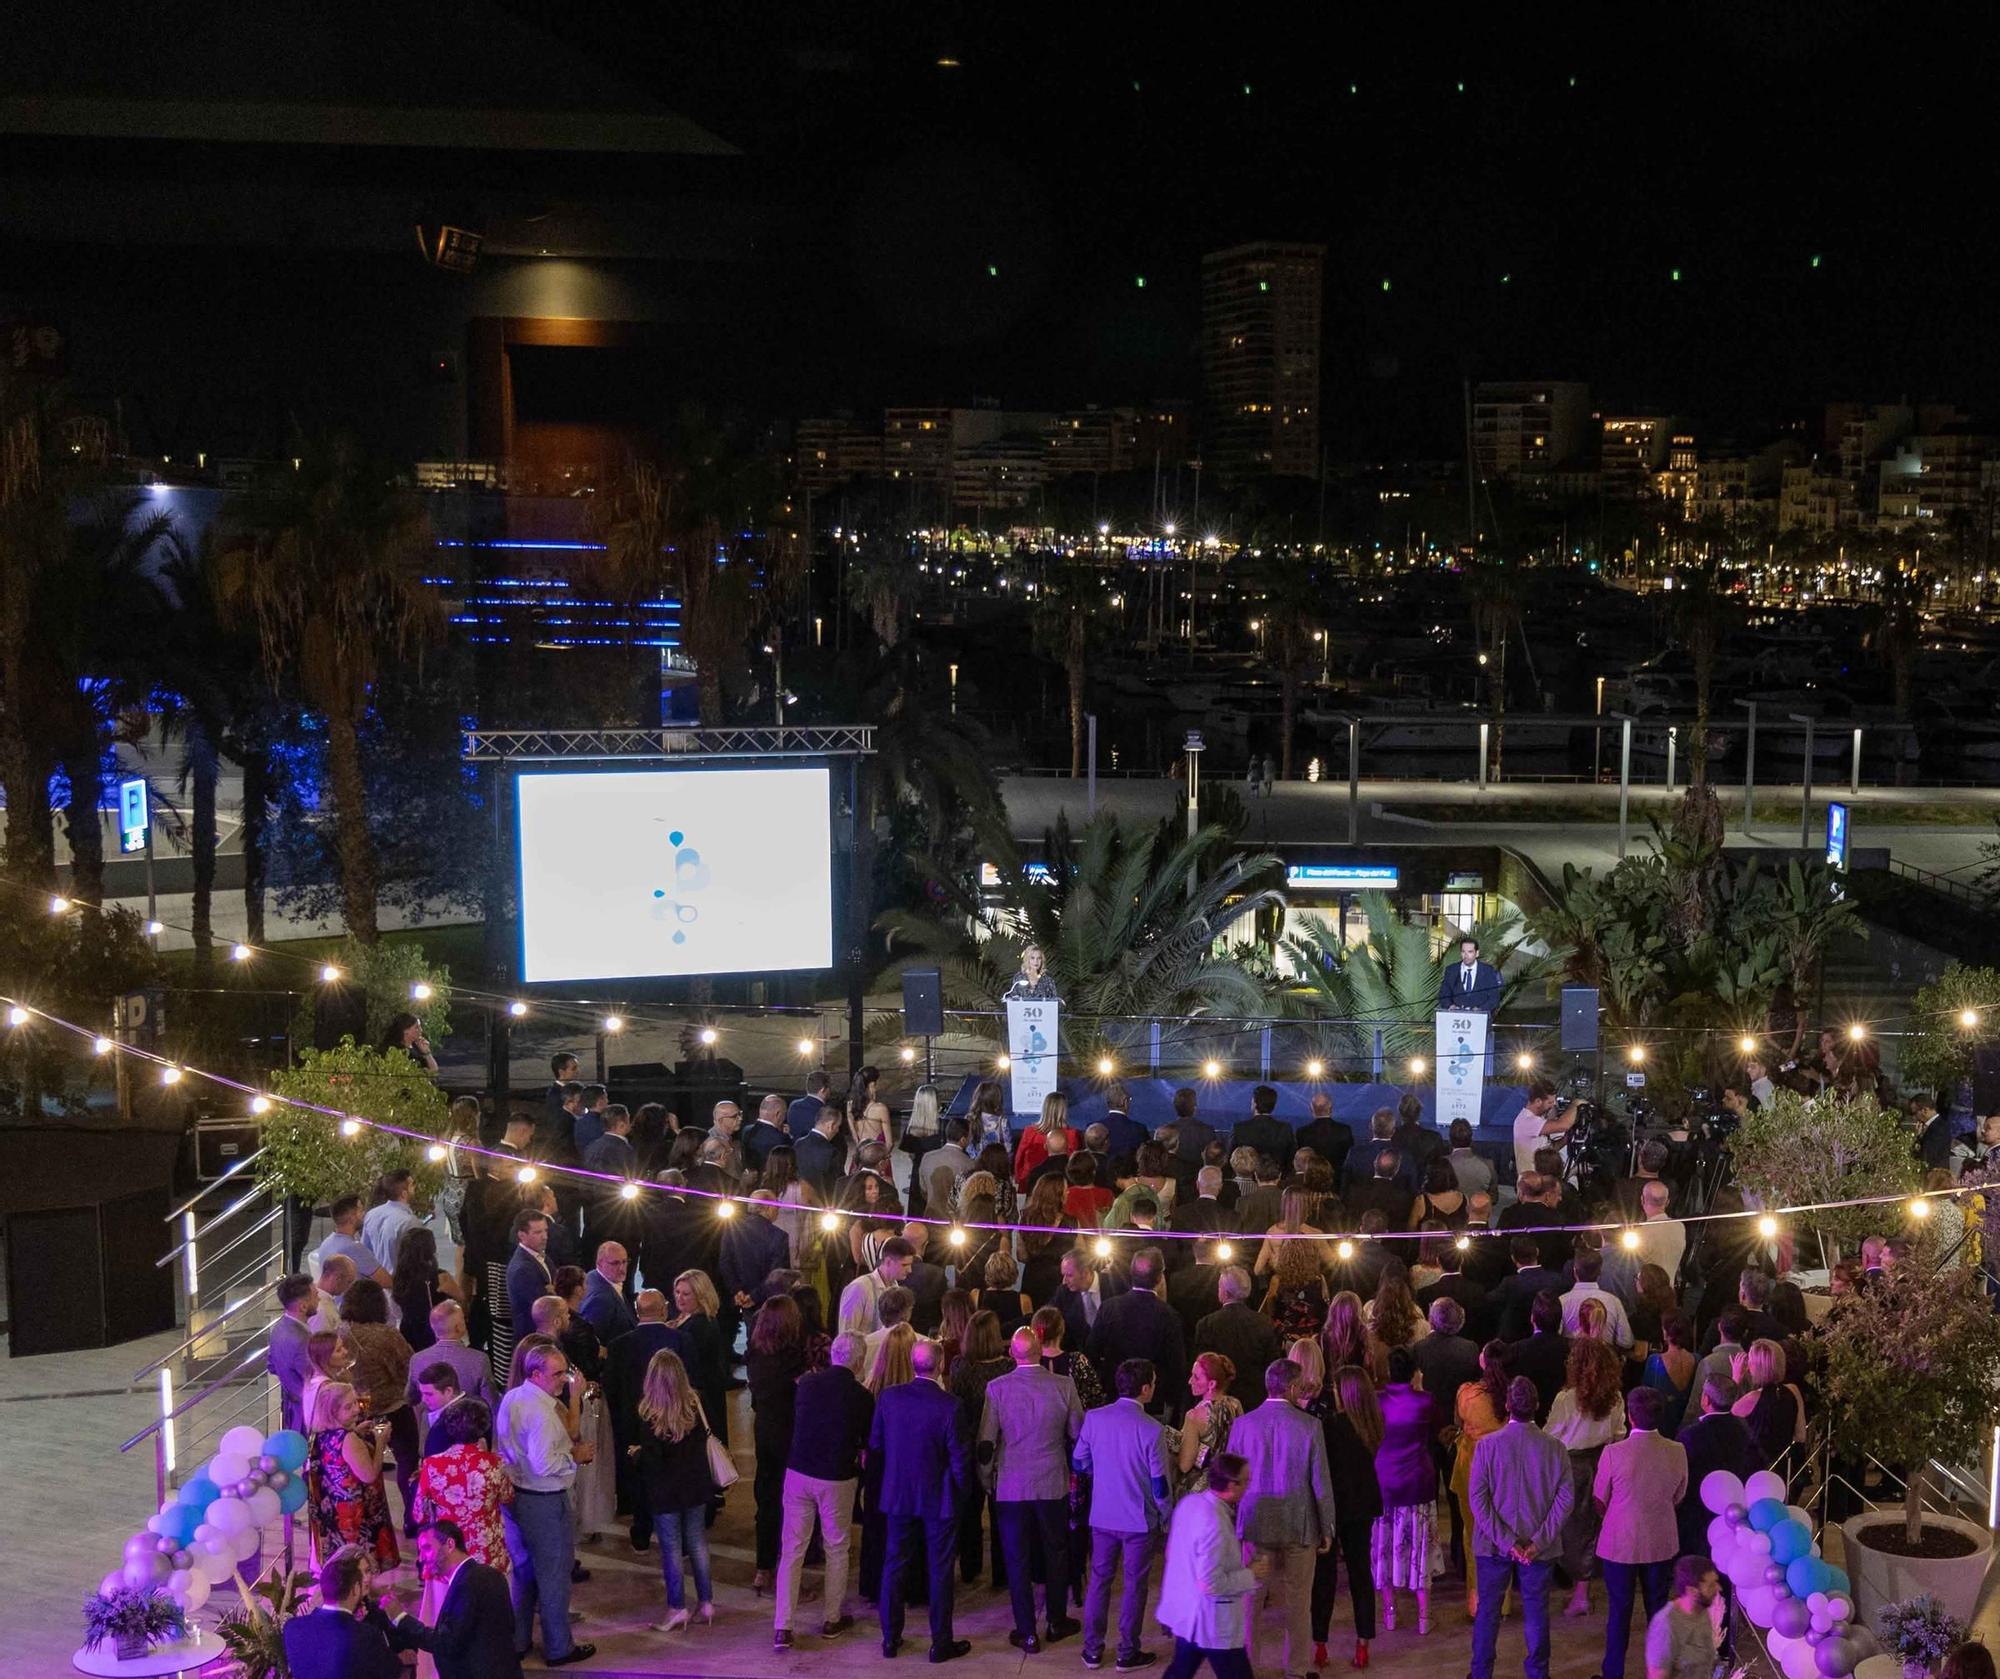 Fiesta de los 50 años del Hotel Meliá Alicante